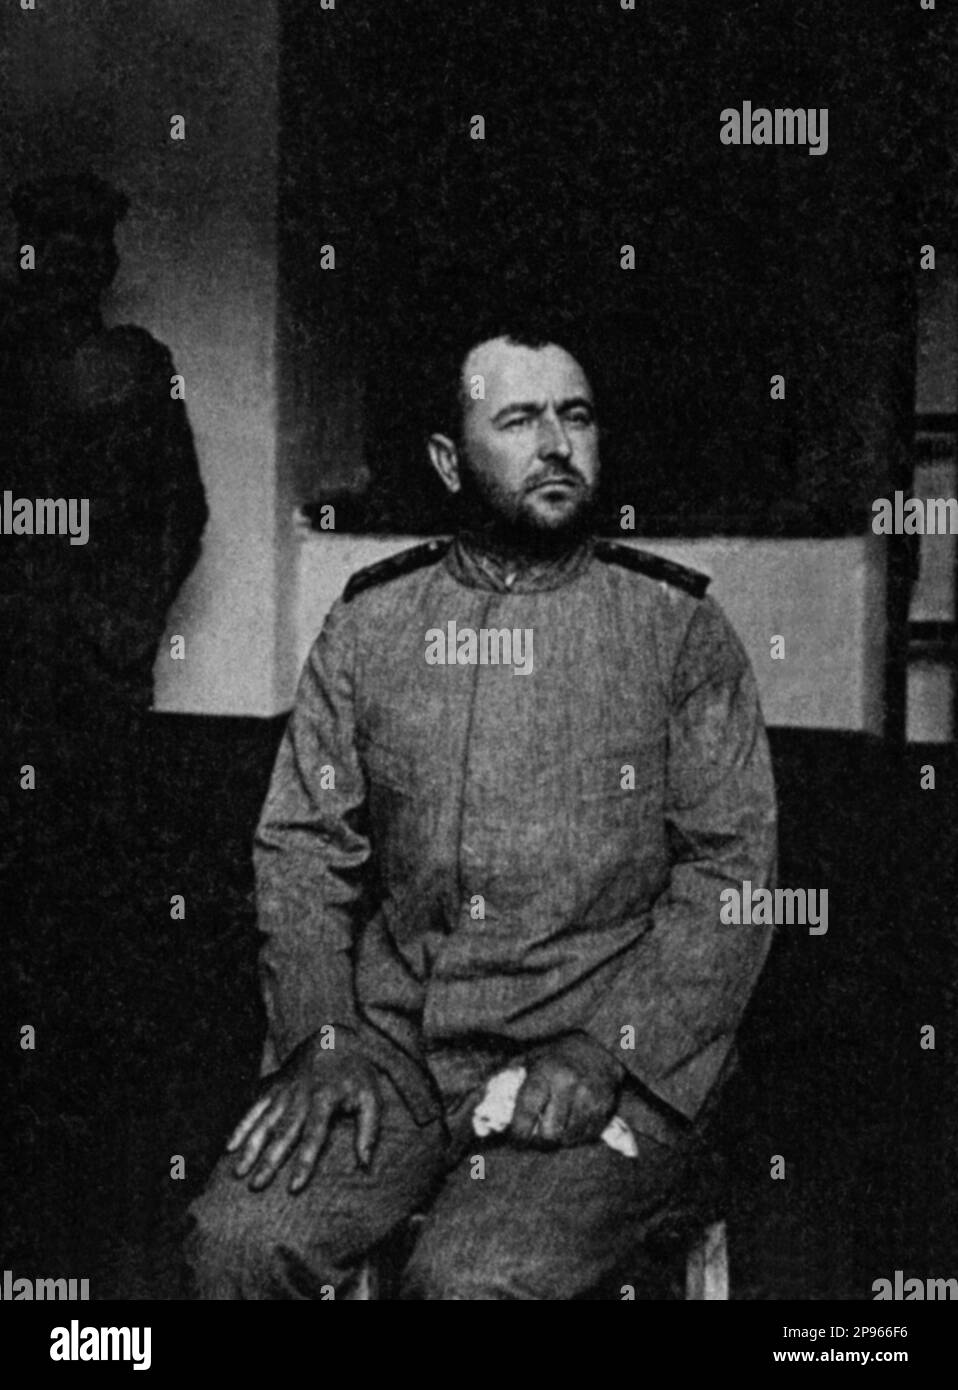 1916 , POLA , at time in  AUSTRIA :  The italian patriot Ufficiale di Marina NAZARIO SAURO ( 1880 - 1916 ) prisonier of austrians in jail just few moment before his death .  - Italia foto storiche - HISTORY - WWI - PRIMA GUERRA MONDIALE - World War - Great War - Grande Guerra - POLITICA - POLITIC - PATRIA - PATRIOTA - EROE - HERO  - barba - beard - military uniform - uniforme divisa militare - prigioniero di guerra ----  Archivio GBB Stock Photo